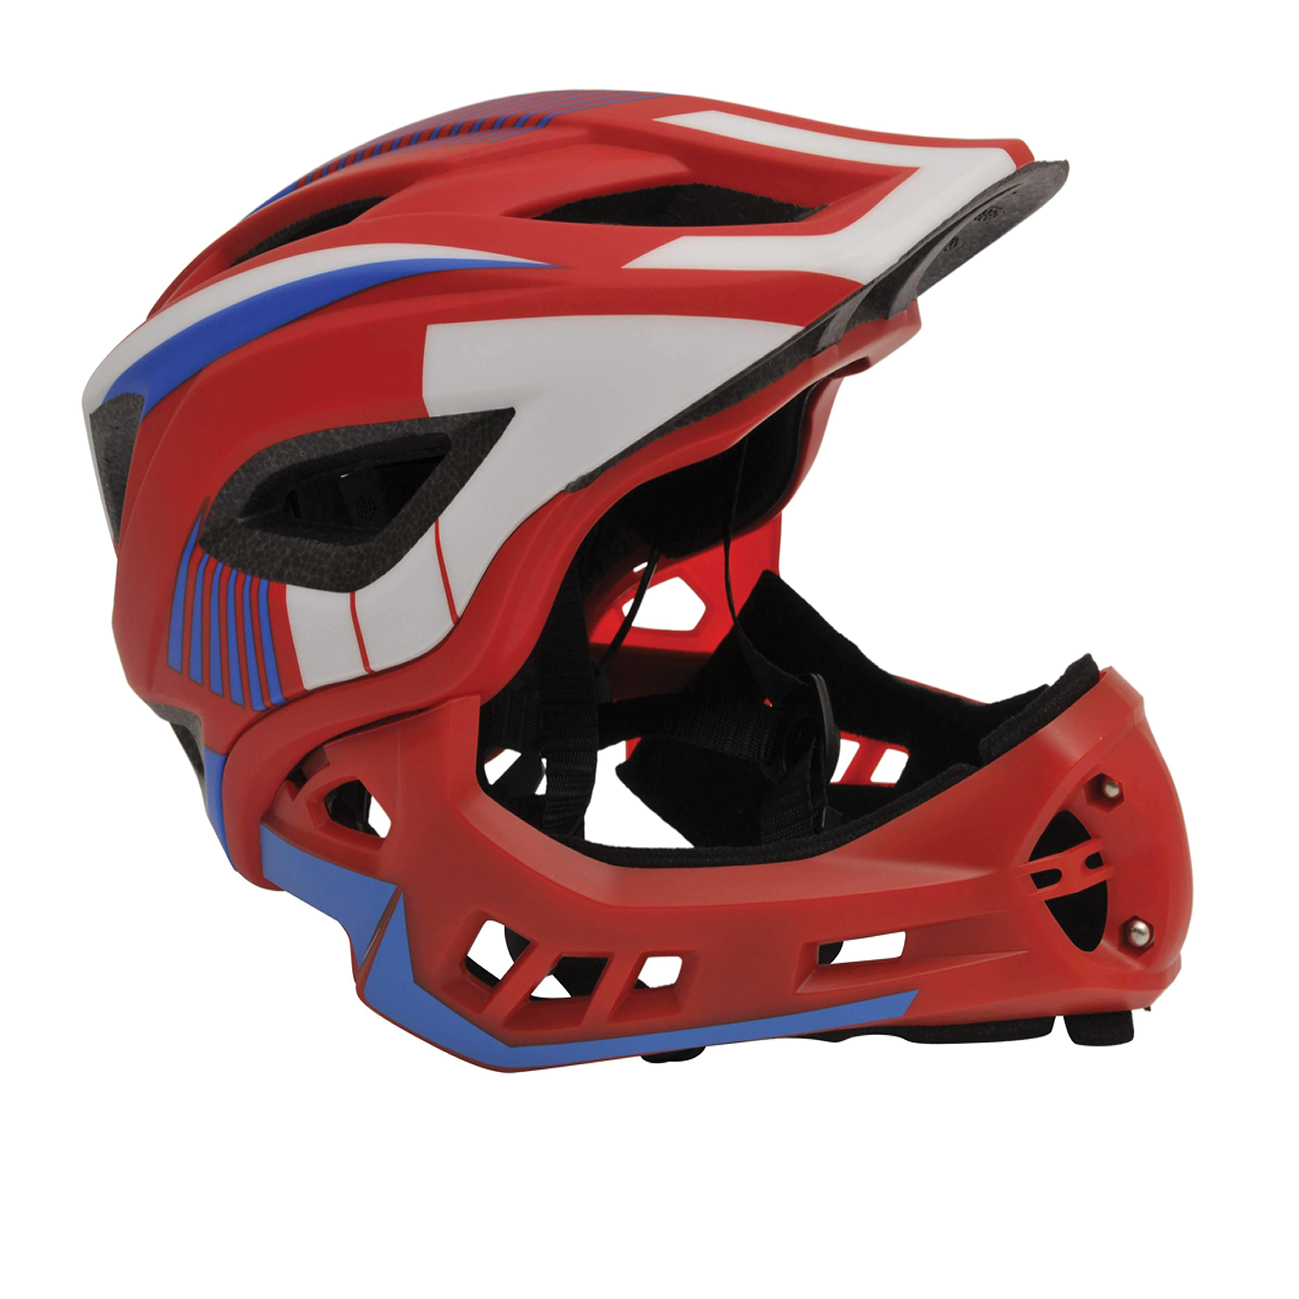 Kiddimoto - Ikon Full Face Bike Helmet